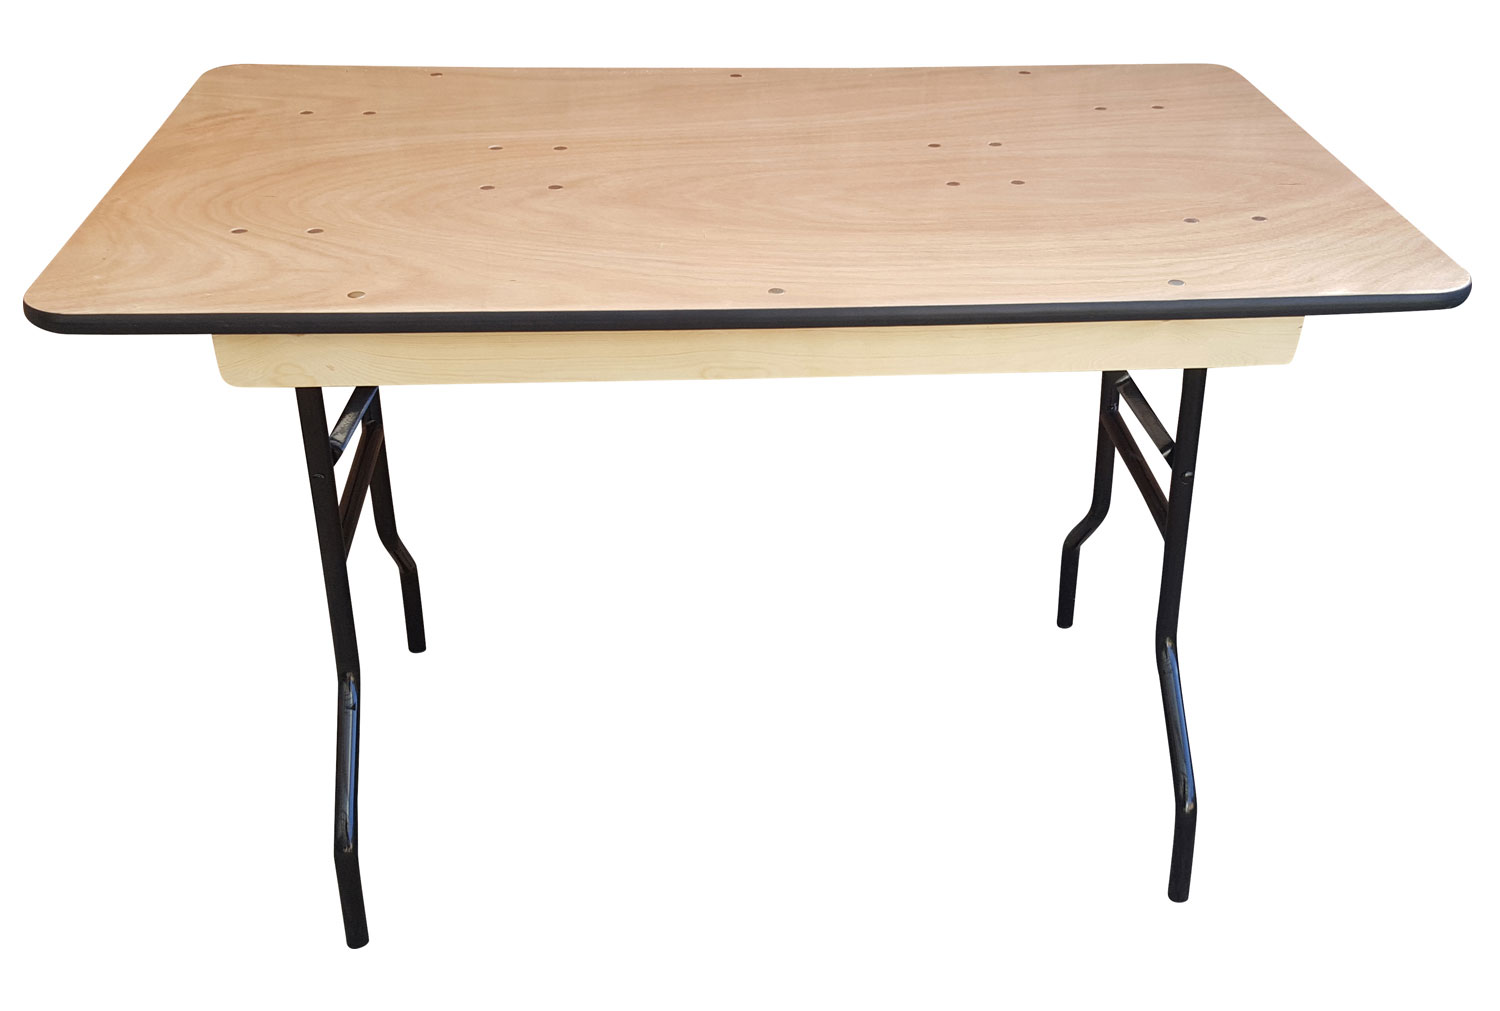 Suttner Rectangular Folding Trestle Table, 122wx76dx76h (cm)